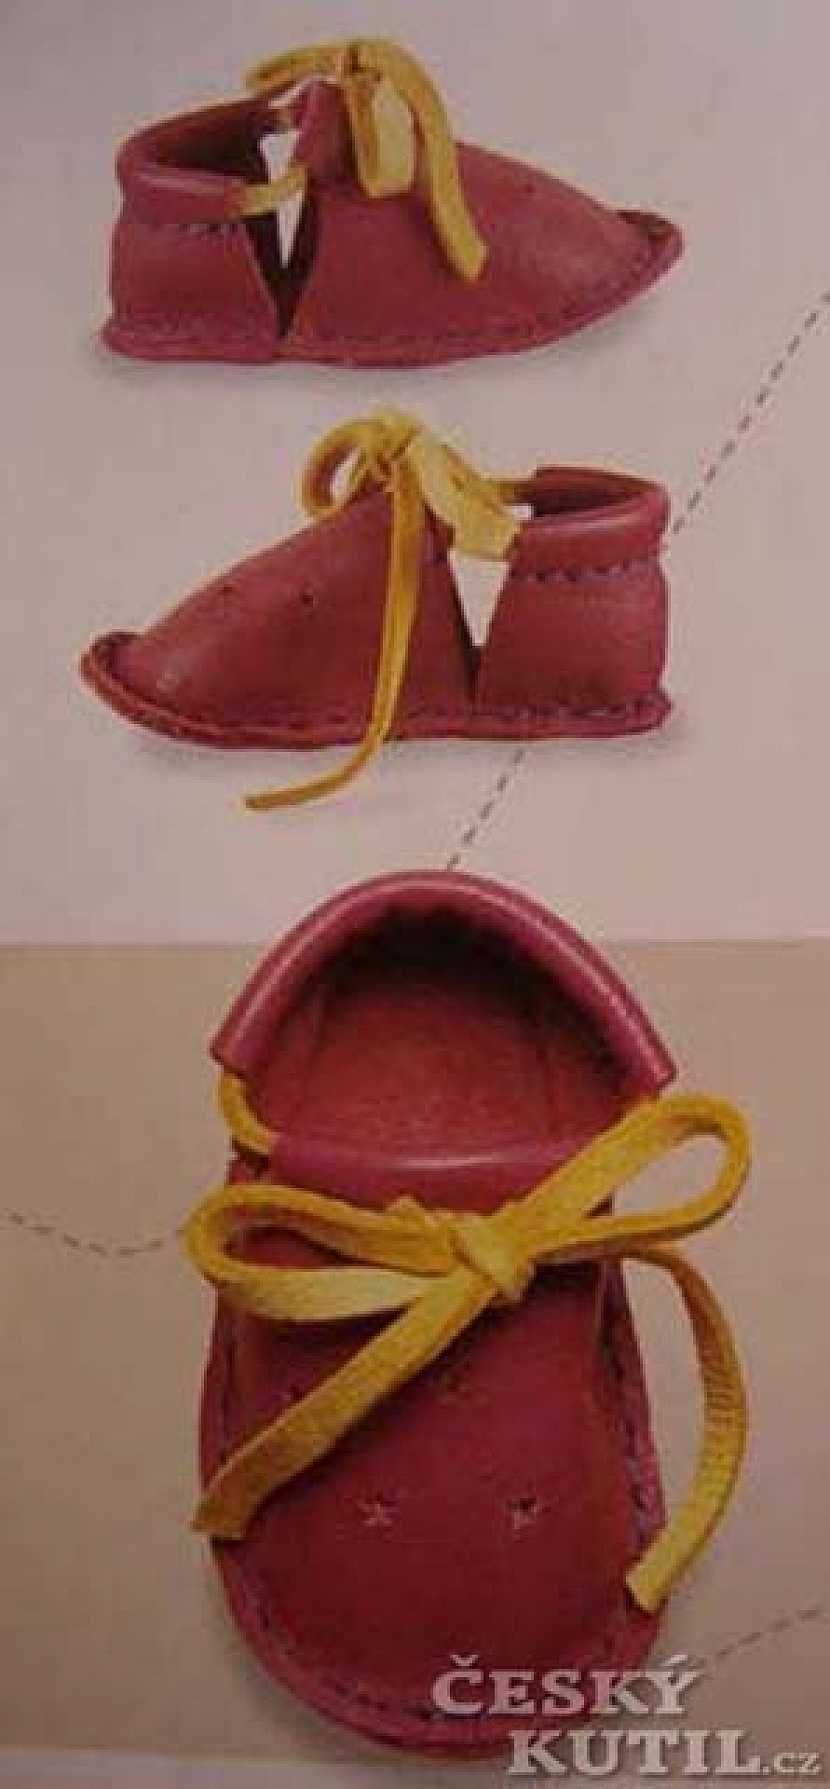 Ševče, drž se svého kopyta! Výroba kožených sandálů tradičním postupem.